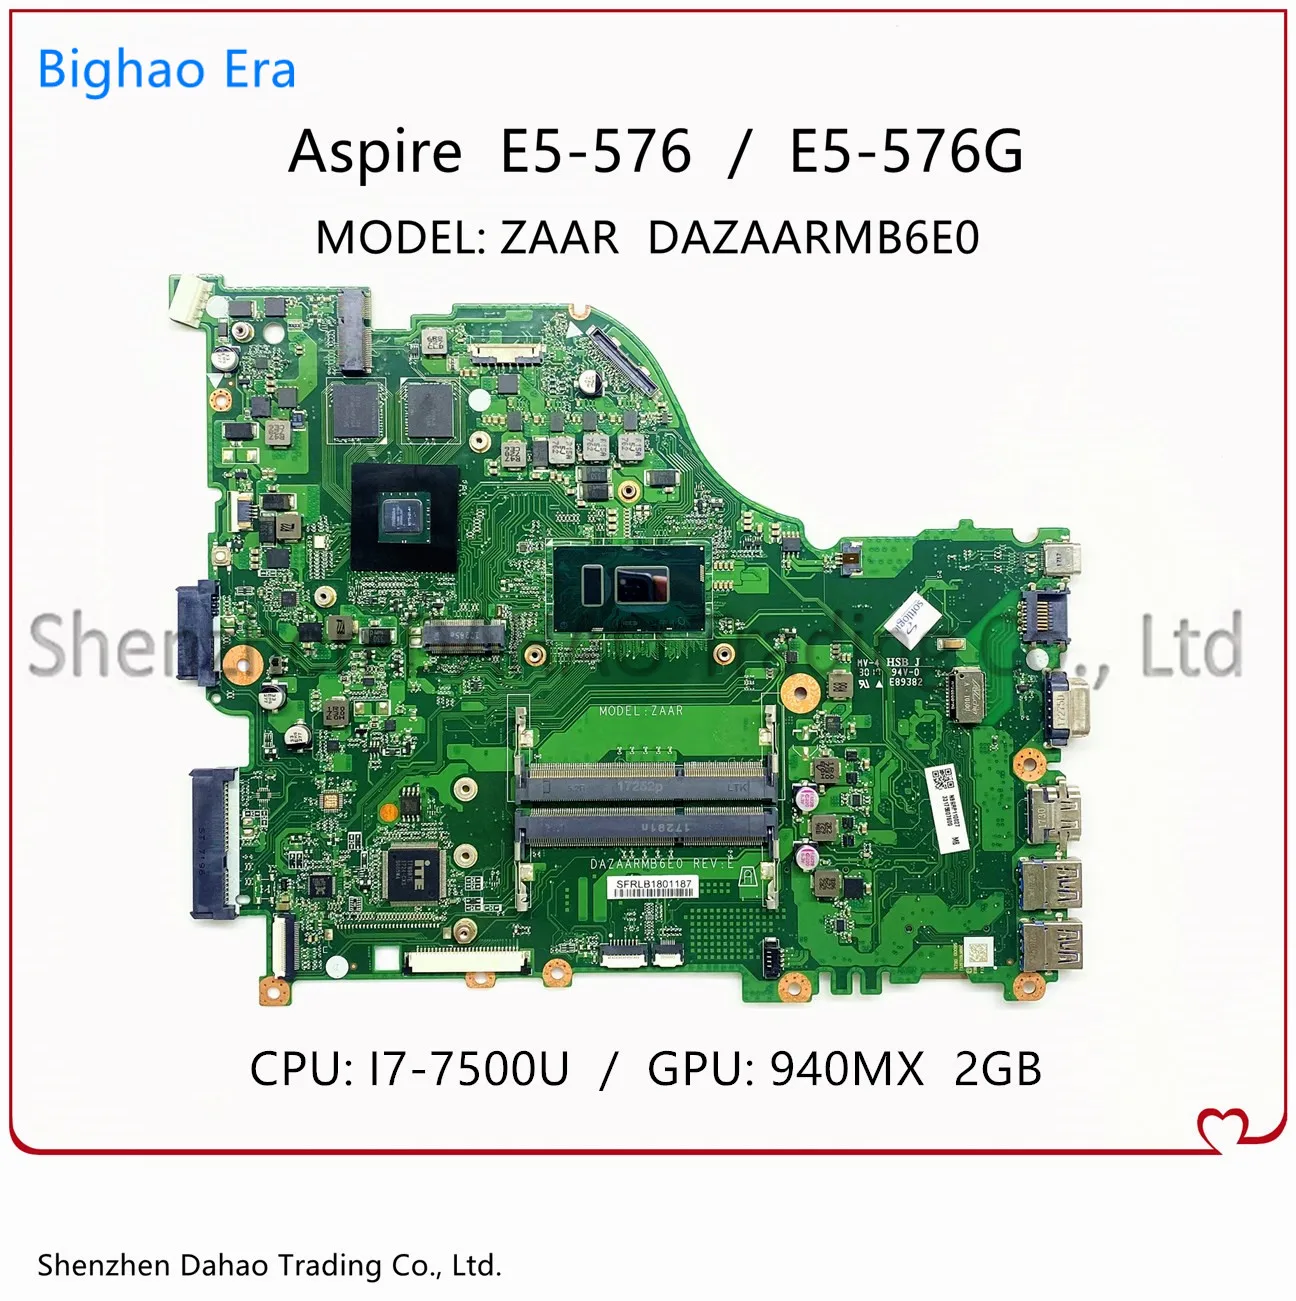 

Материнская плата для ноутбука ACER Aspire E5-576 zazaar DAZAARMB6E0 с процессором i7-7500U 940MX 2G-GPU 100%, полностью протестирована NMGRV1100C8